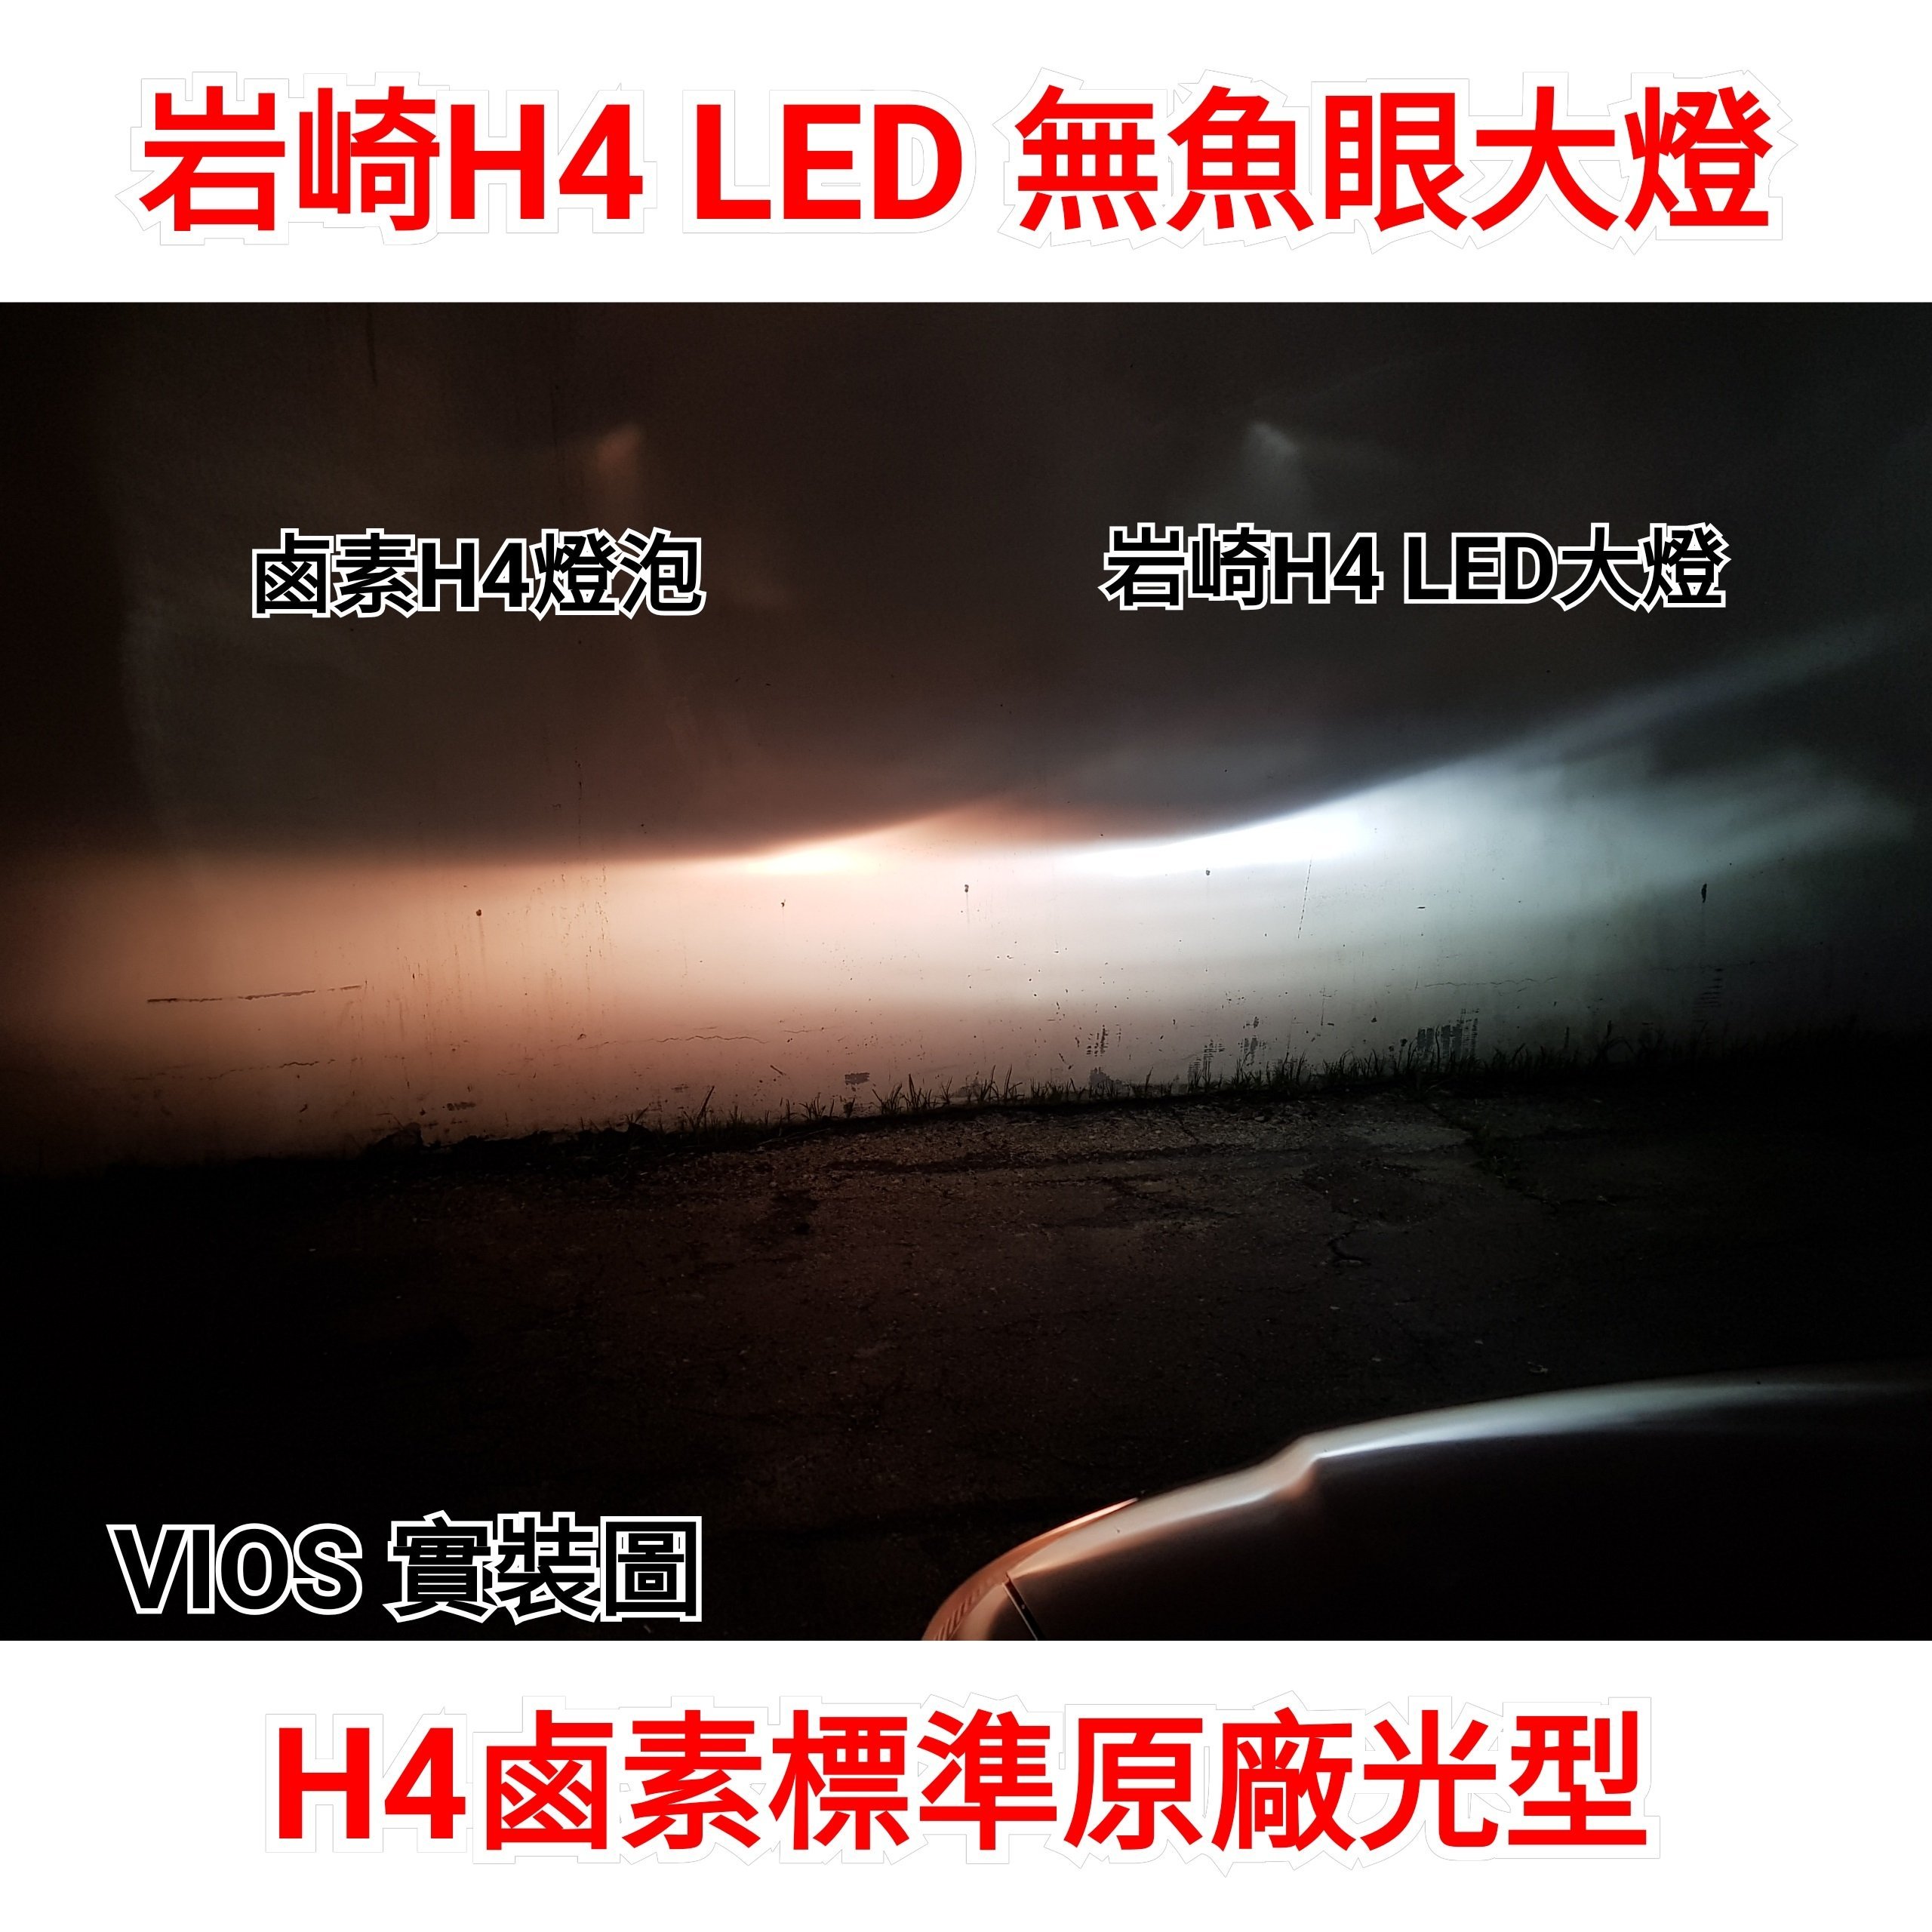 VIOS YARIS 可驗車 內有光型 保證正品 YEAKY 岩崎 LED大燈 H4 5500K 白光 可驗車 超優光型